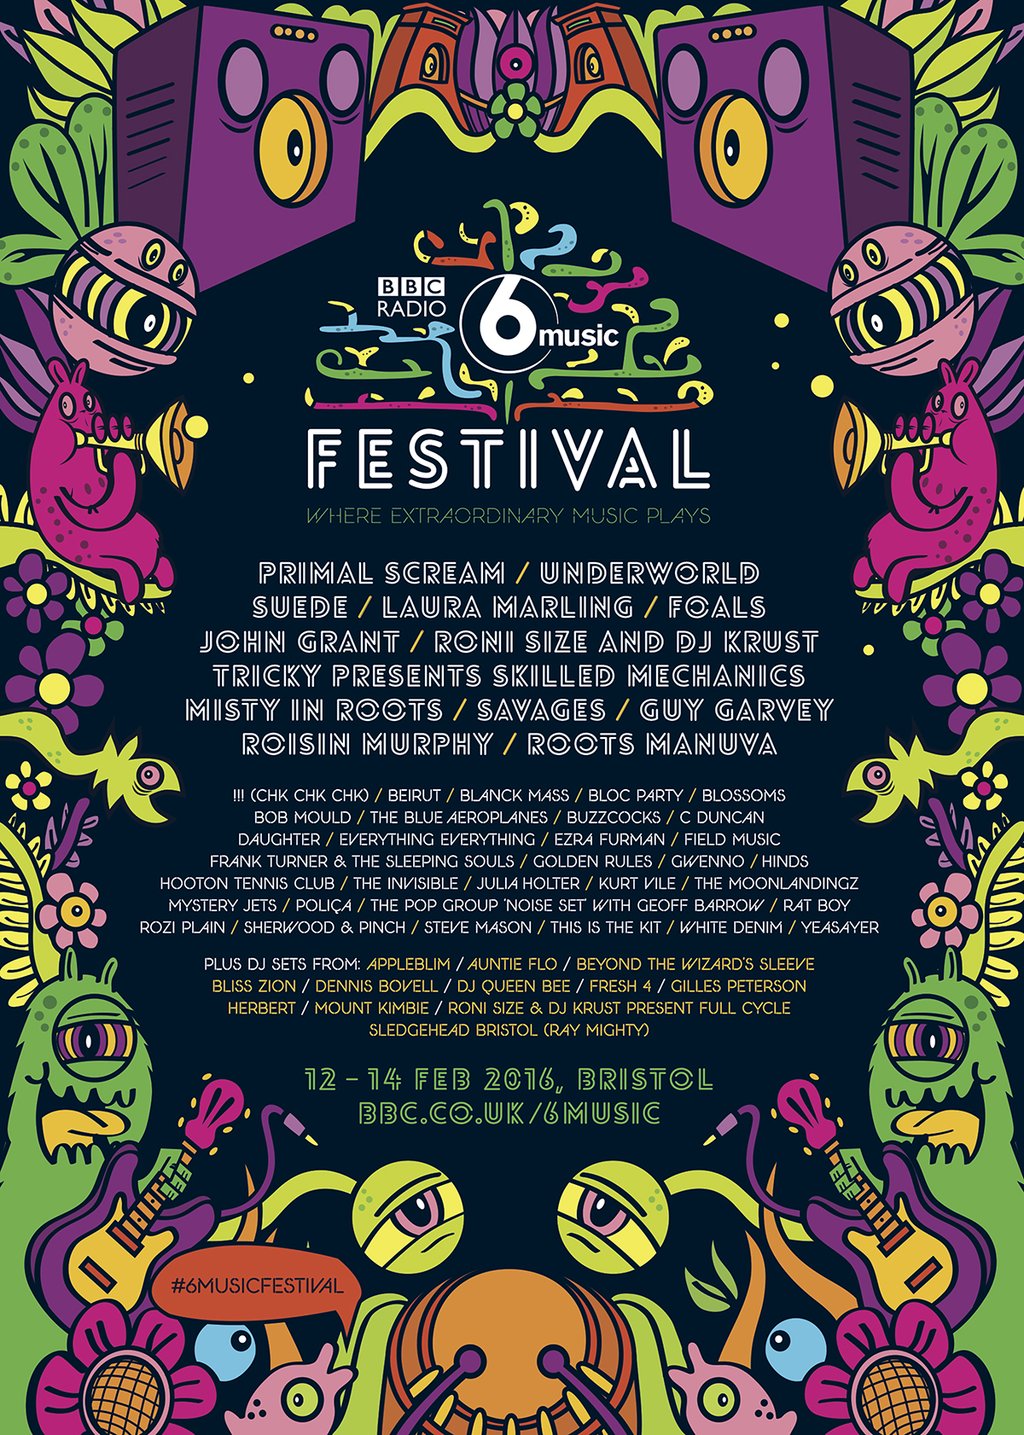 Cartel completo del BBC Radio 6 Music Festival 2016